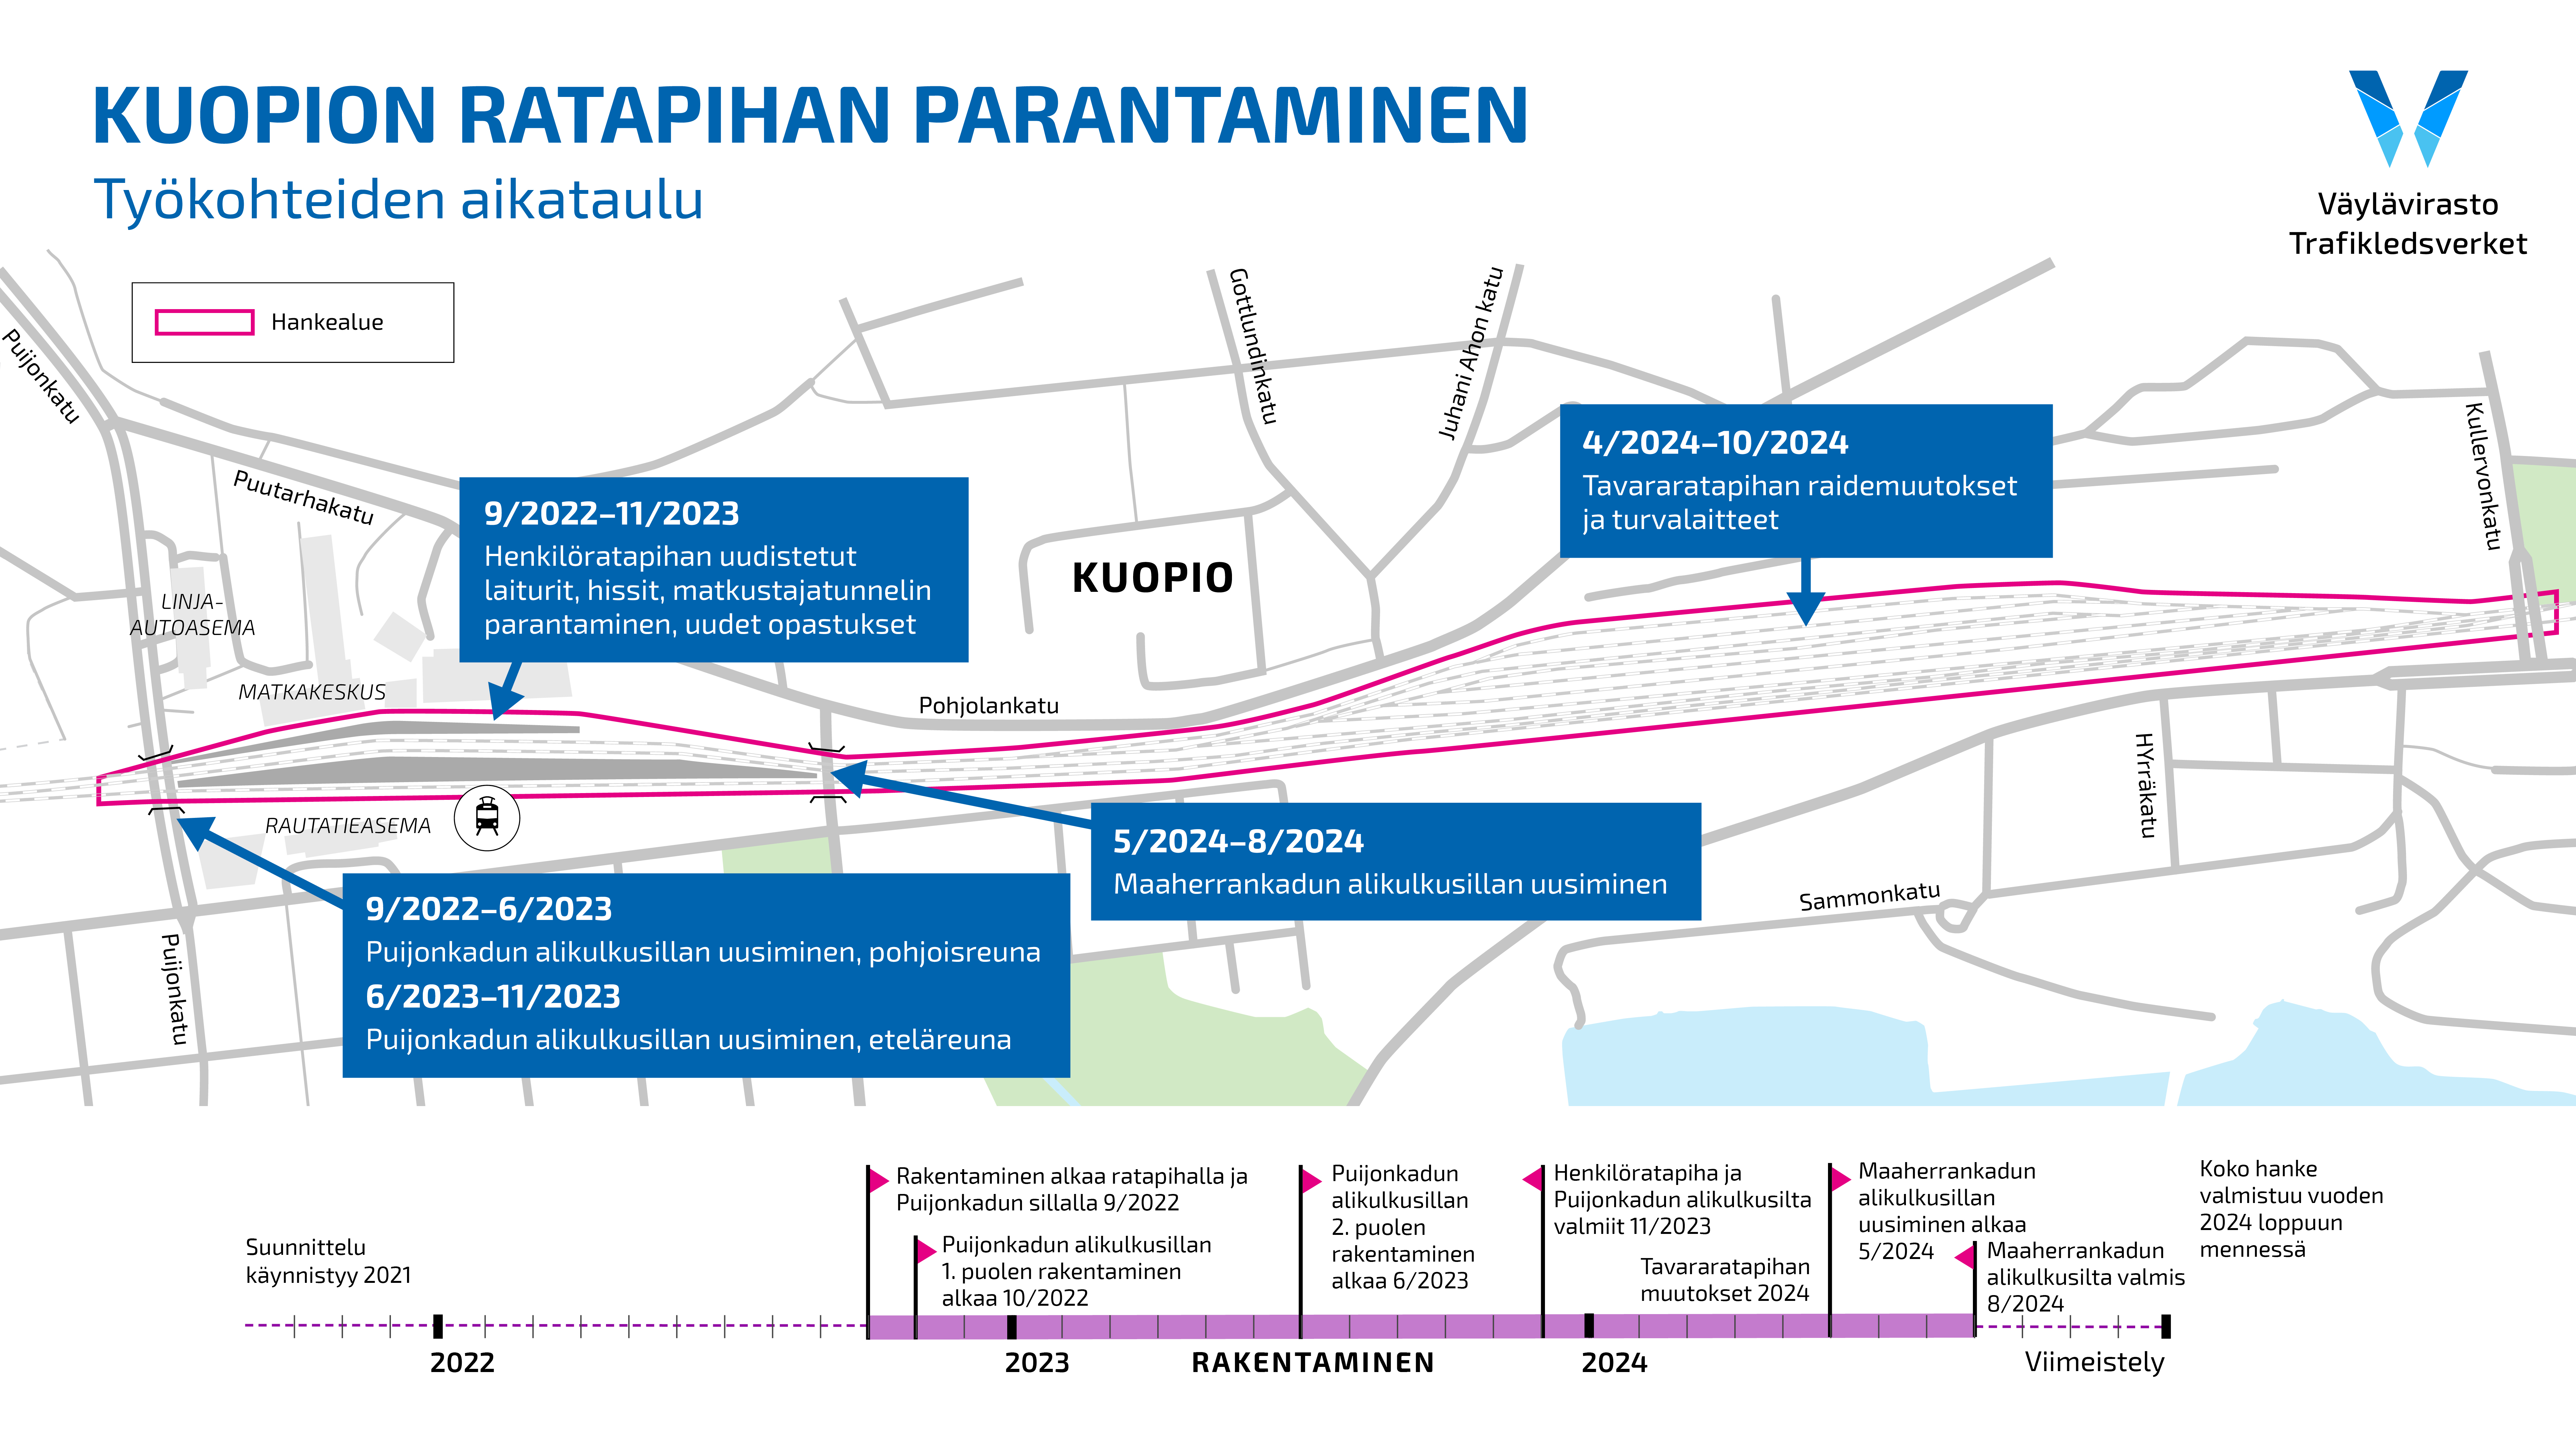 Karttakuvassa on kuvattu Kuopion ratapihahankkeen eri toimenpiteet ja niiden aikataulu.